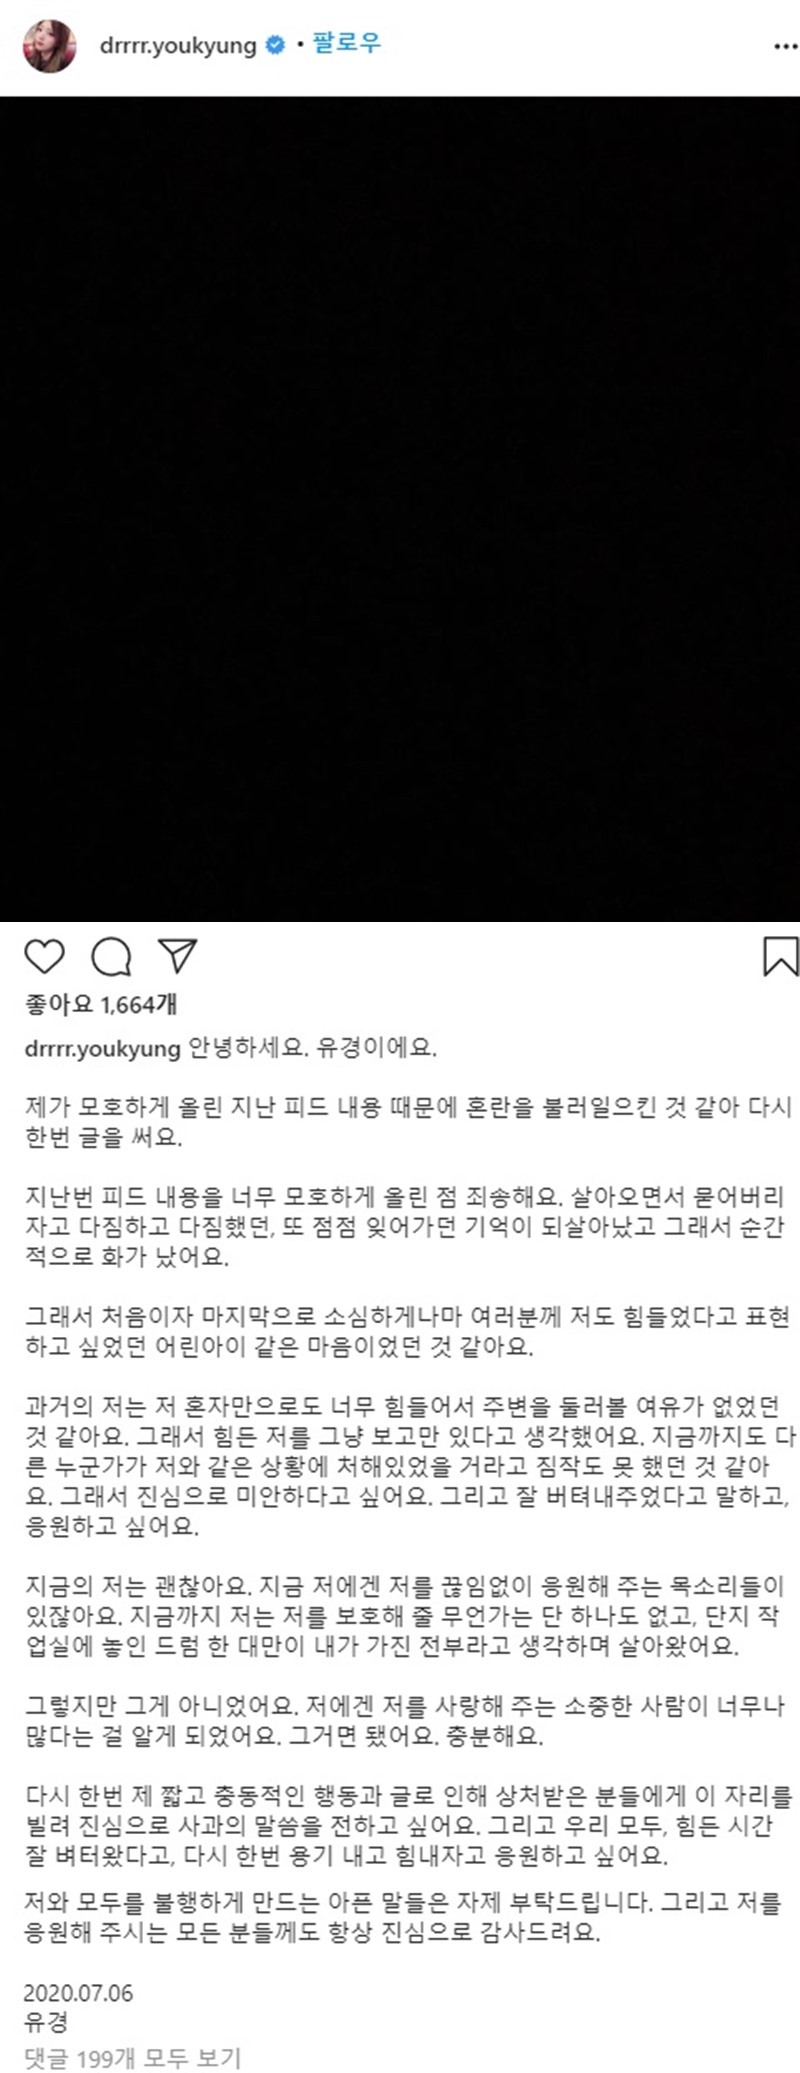 AOA 지민이 ‘괴롭힘 가해’ 논란으로 그룹을 탈퇴한 가운데 전 멤버였던 서유경이 입장을 밝혔다. 6일 서유경은 자신의 인스타그램에 장문의 글을 게재했다. 서유경은 “제가 지난번 피드내용�